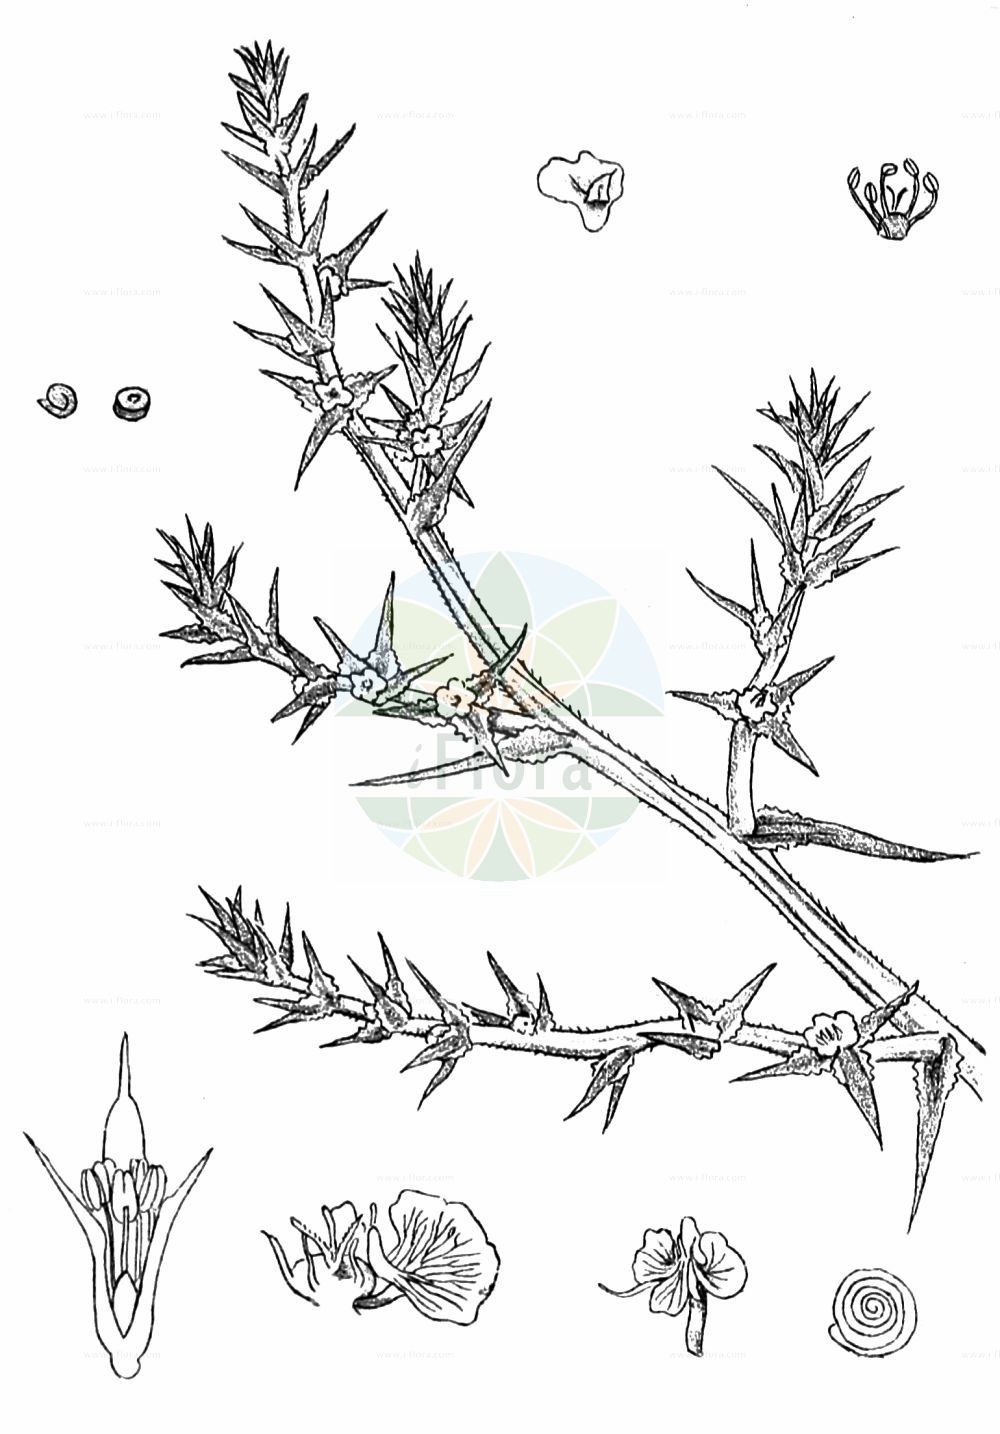 Historische Abbildung von Salsola kali (Gewöhnliches Kali-Salzkraut - Prickly Saltwort). Das Bild zeigt Blatt, Bluete, Frucht und Same. ---- Historical Drawing of Salsola kali (Gewöhnliches Kali-Salzkraut - Prickly Saltwort). The image is showing leaf, flower, fruit and seed.(Salsola kali,Gewöhnliches Kali-Salzkraut,Prickly Saltwort,Kali australis,Salsola kali,Gewoehnliches Kali-Salzkraut,Kuesten-Salzkraut,Ungarisches Salzkraut,Prickly Saltwort,Prickly Glasswort,Slender Russian Thistle,Prickly Russian Thistle,Roly-poly,Russian Thistle,Spiny Saltwort,Salsola,Salzkraut,Russian Thistle,Amaranthaceae,Fuchsschwanzgewächse,Pigweed family,Blatt,Bluete,Frucht,Same,leaf,flower,fruit,seed,Kirtikar & Basu (1918))